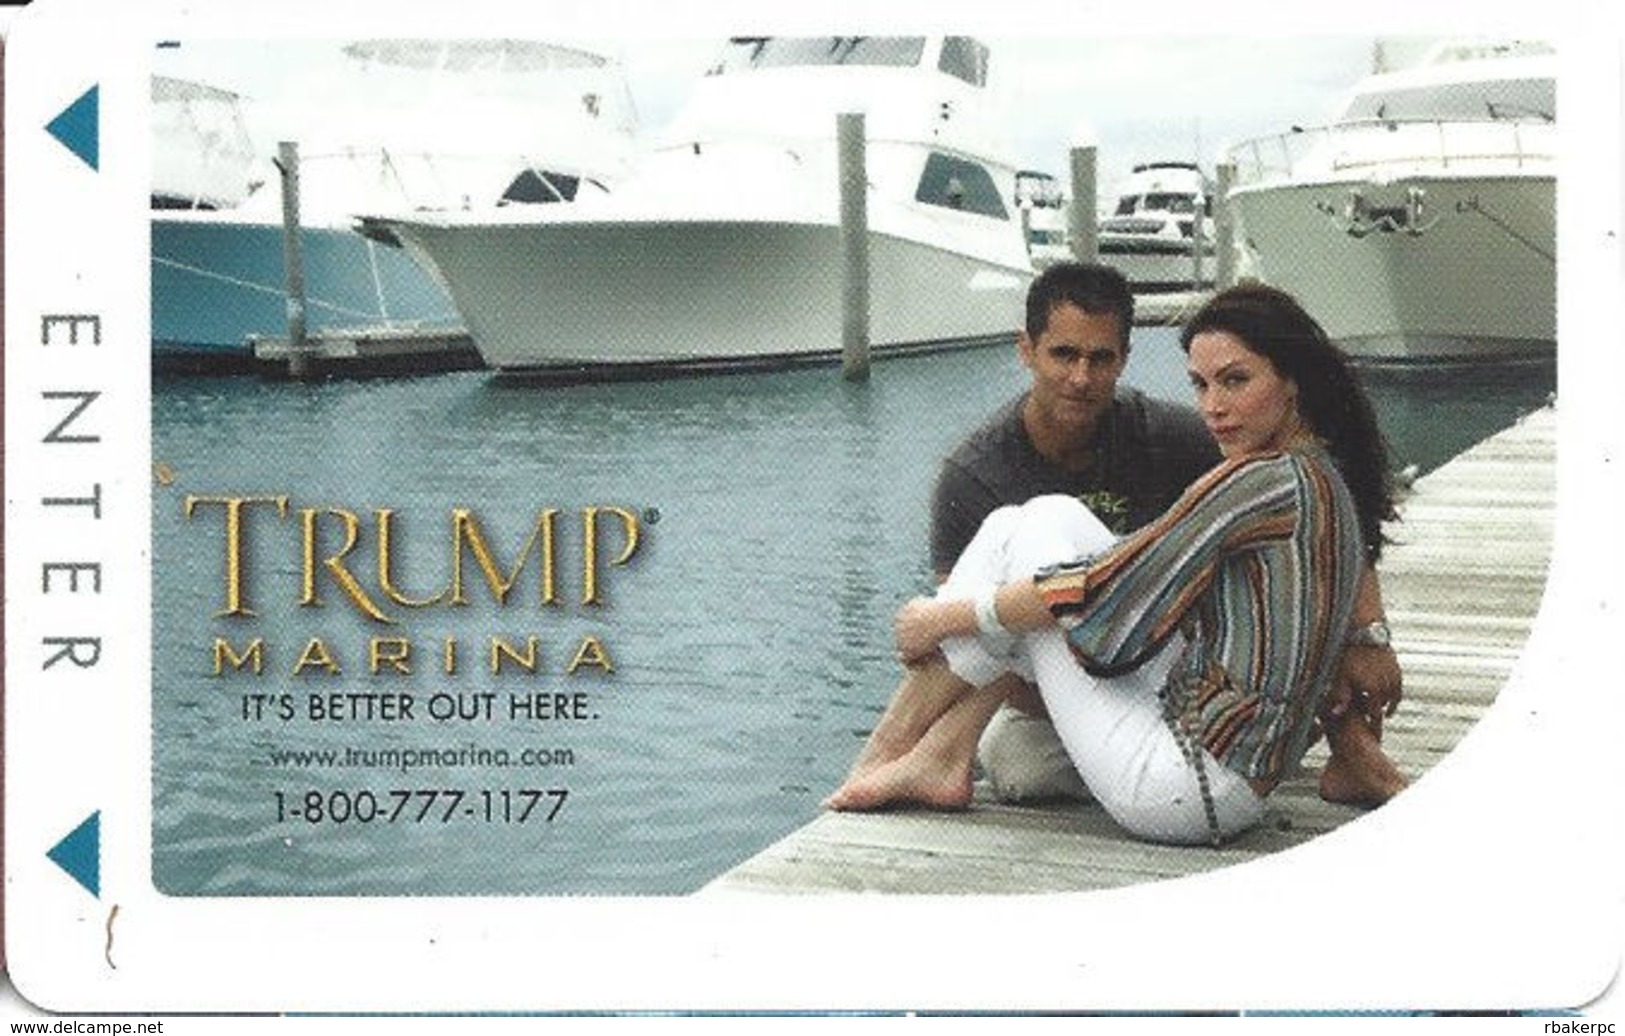 Trump Marina Casino - Atlantic City NJ - Hotel Room Key Card - Hotel Keycards